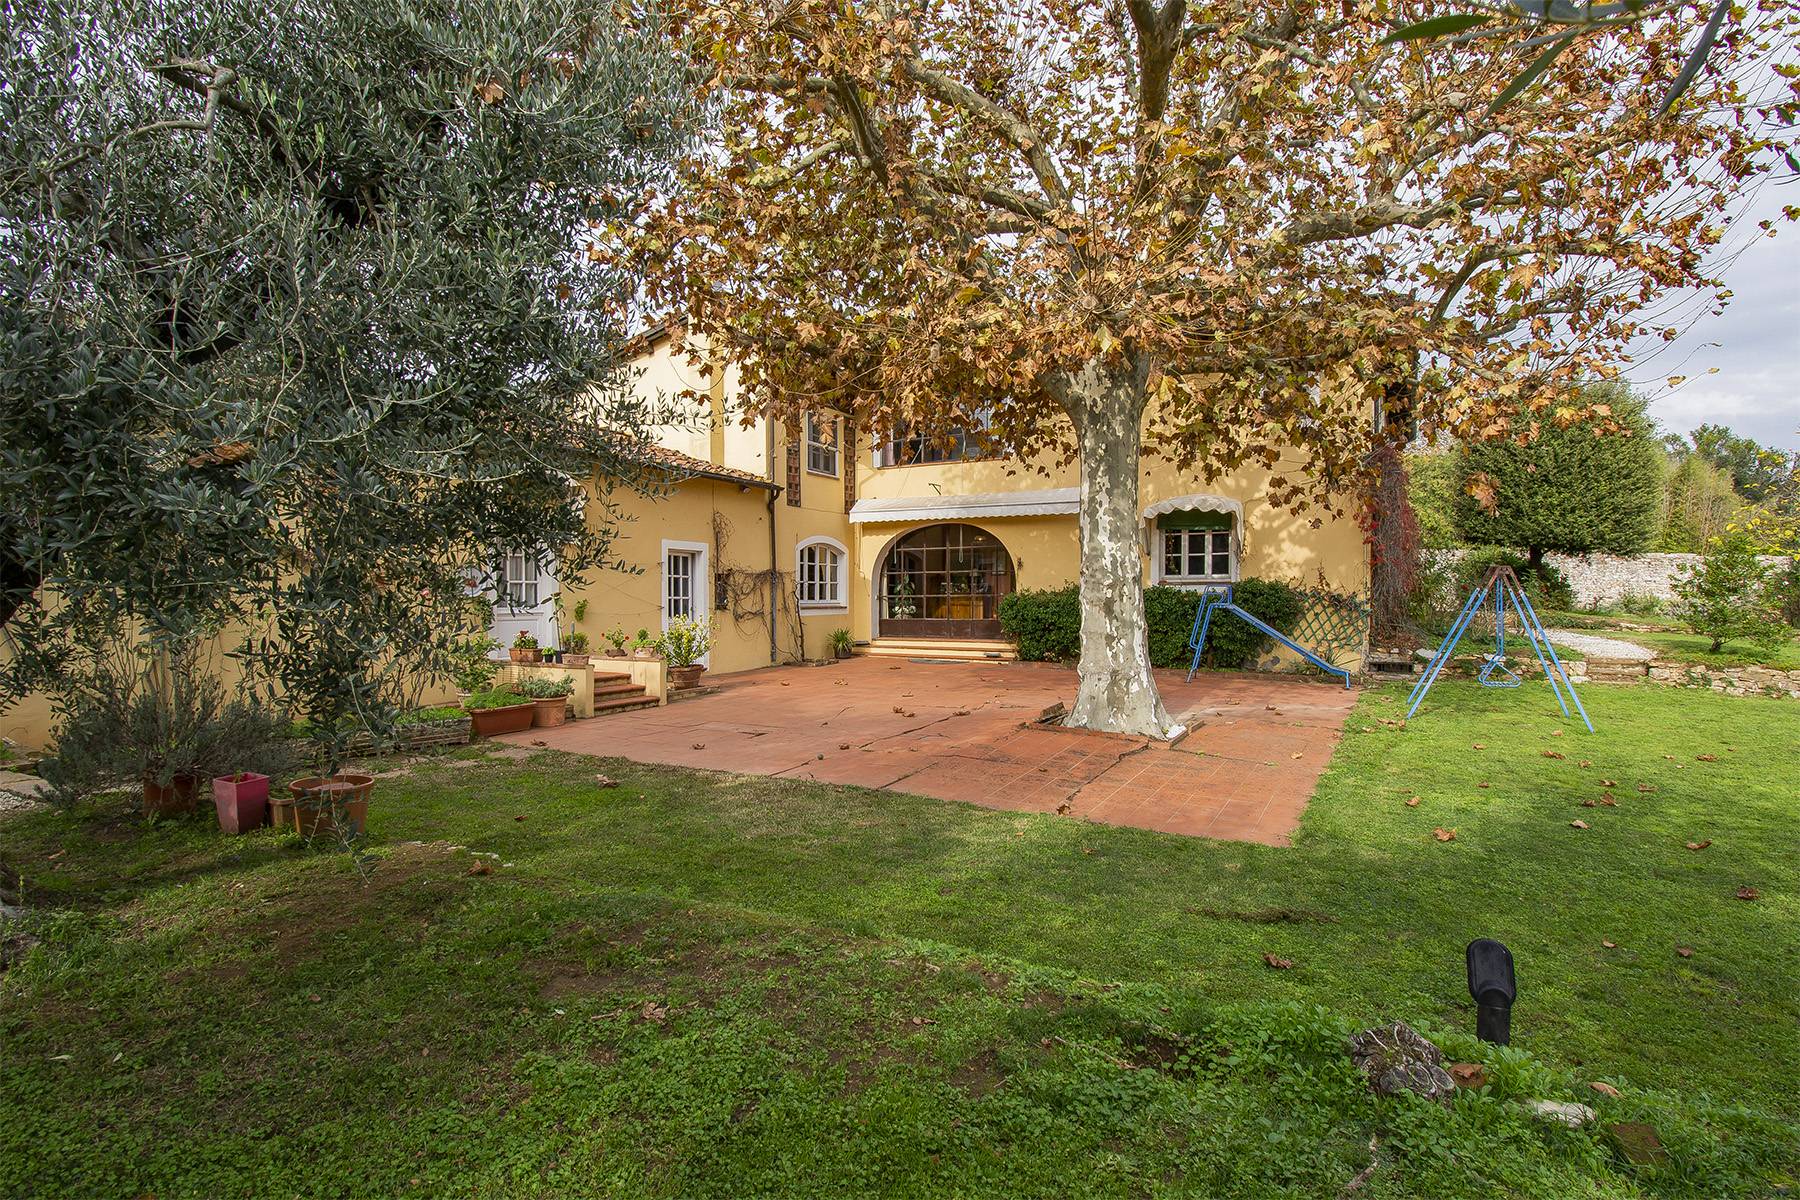 Casa indipendente in Vendita a Lucca: 5 locali, 500 mq - Foto 2